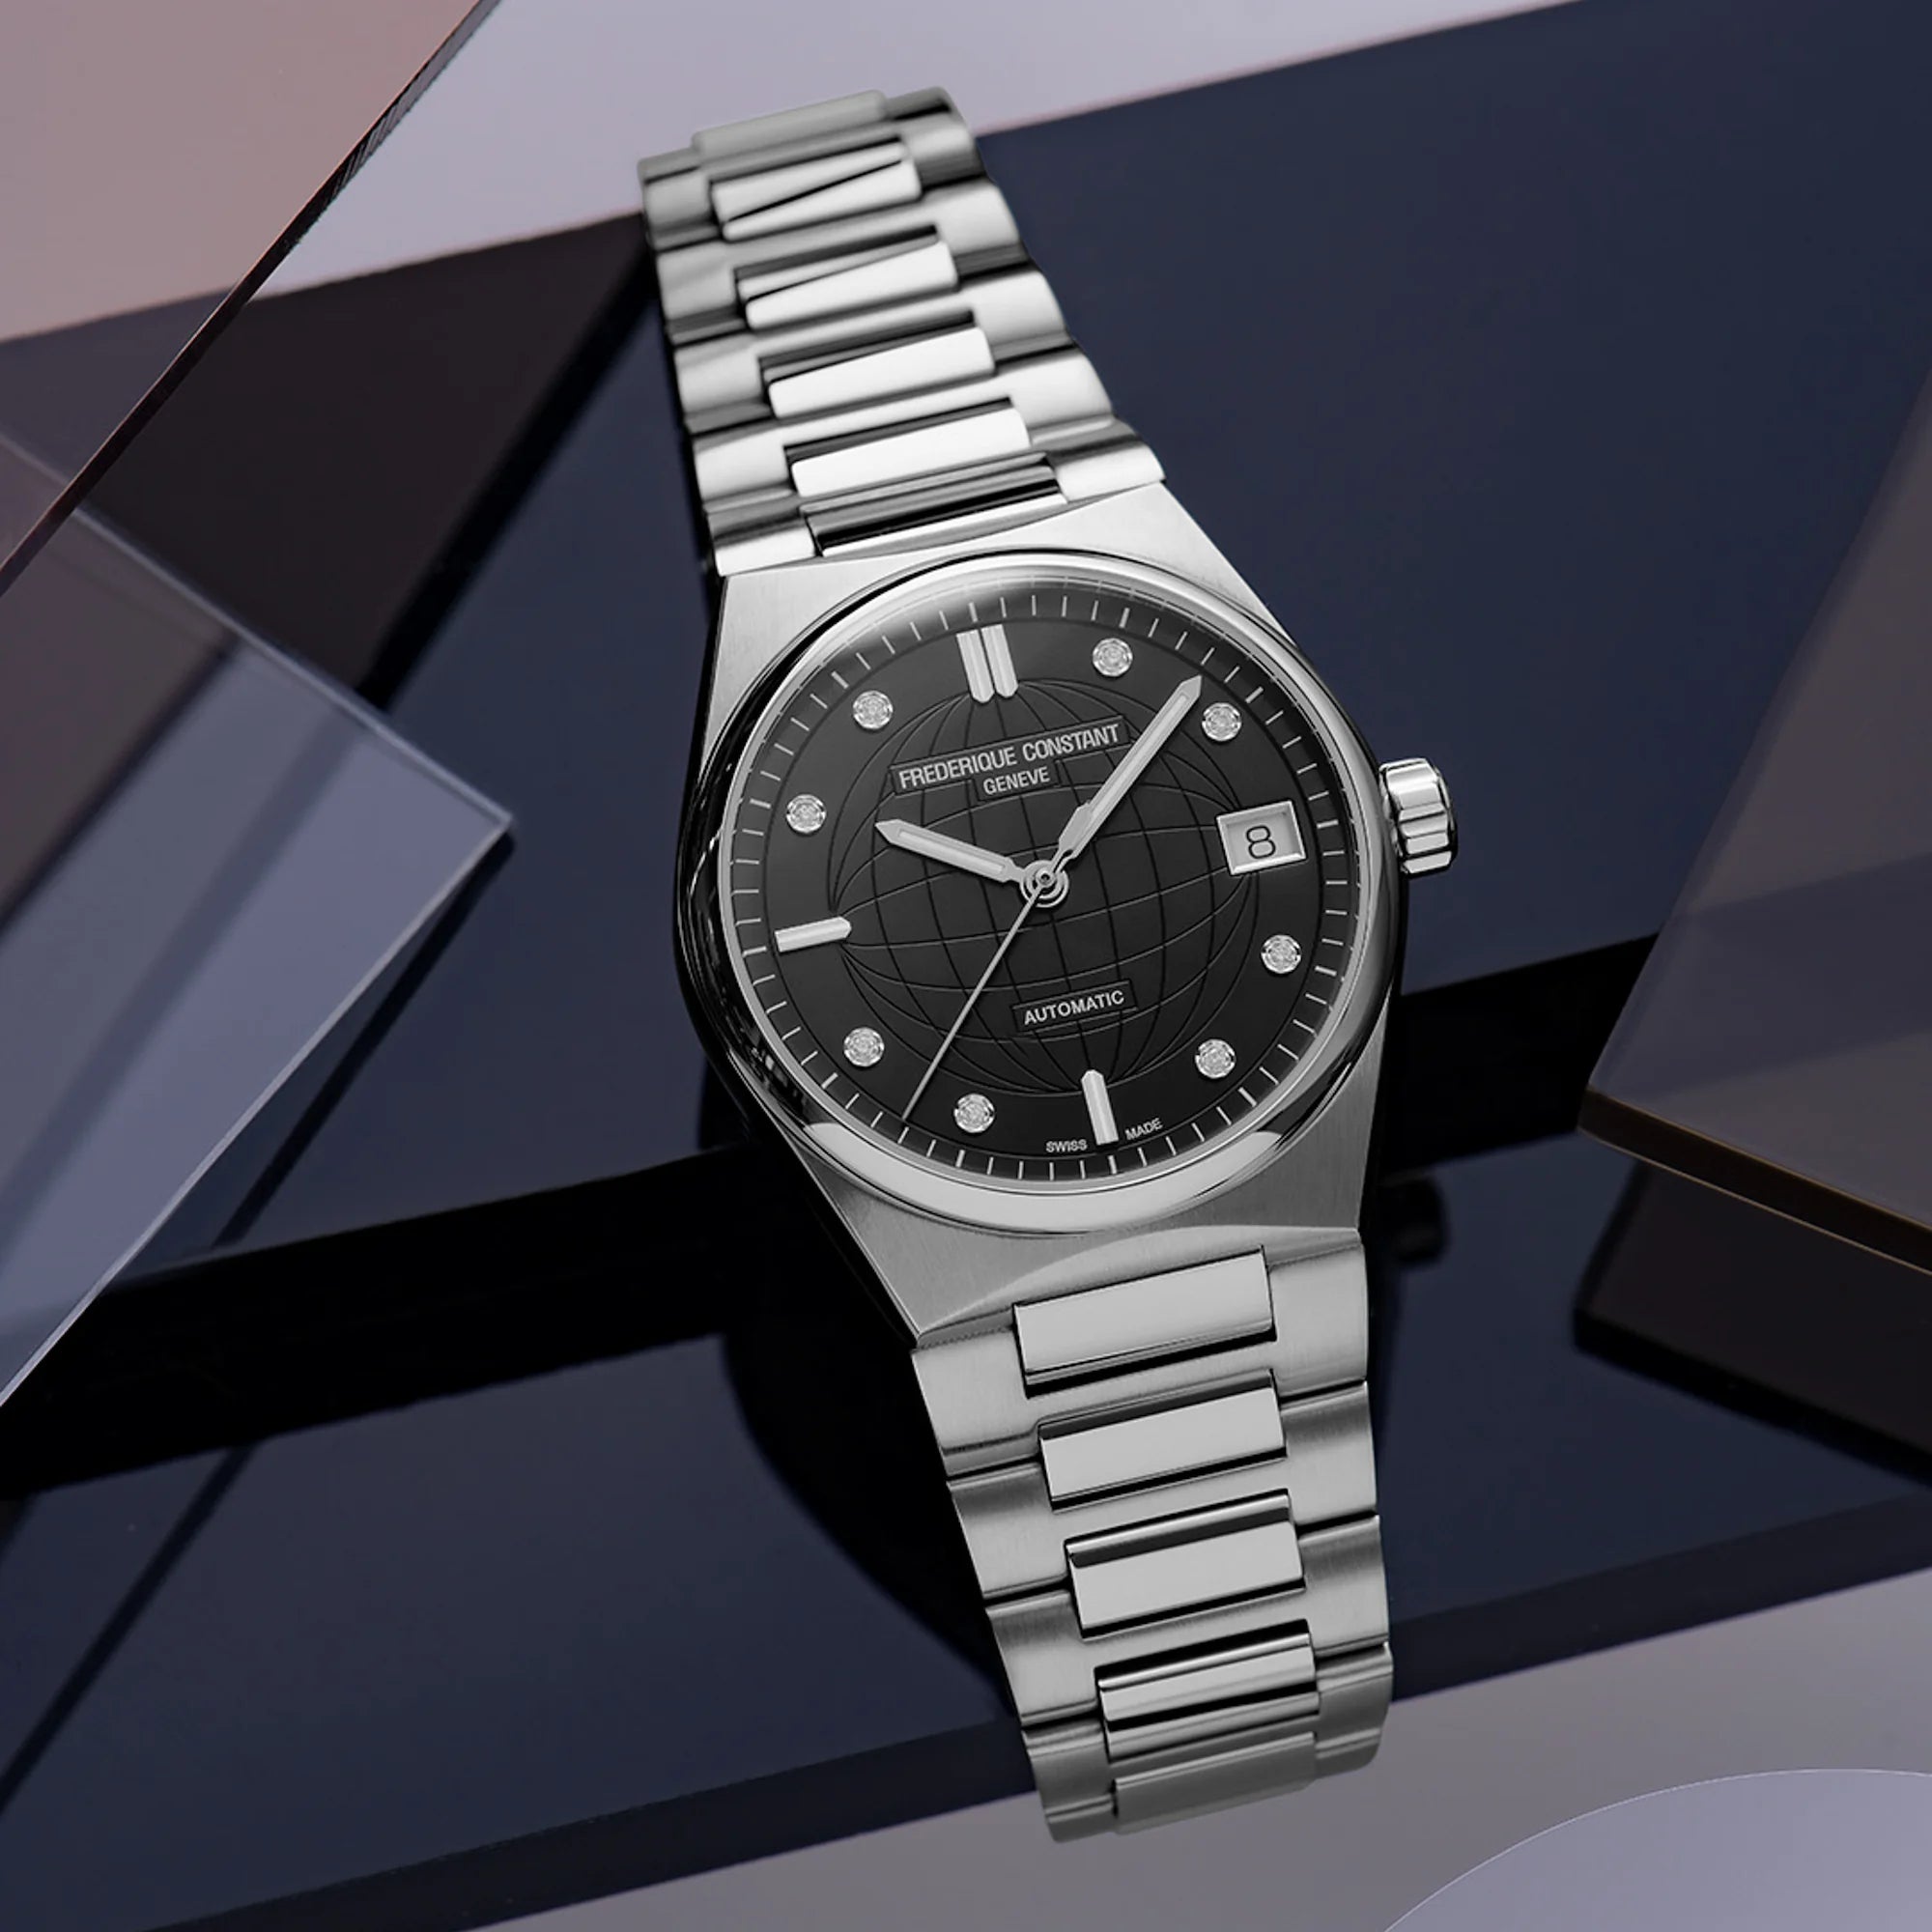 Produktfotografie der Frederique Constant Uhr "Highlife Ladies Automatic" mit einem schwarzen Zifferblatt mit Diamant-Indizes und Edelstahl-Gehäuse vor eckigen dunkelblauen Plastik-Scheiben